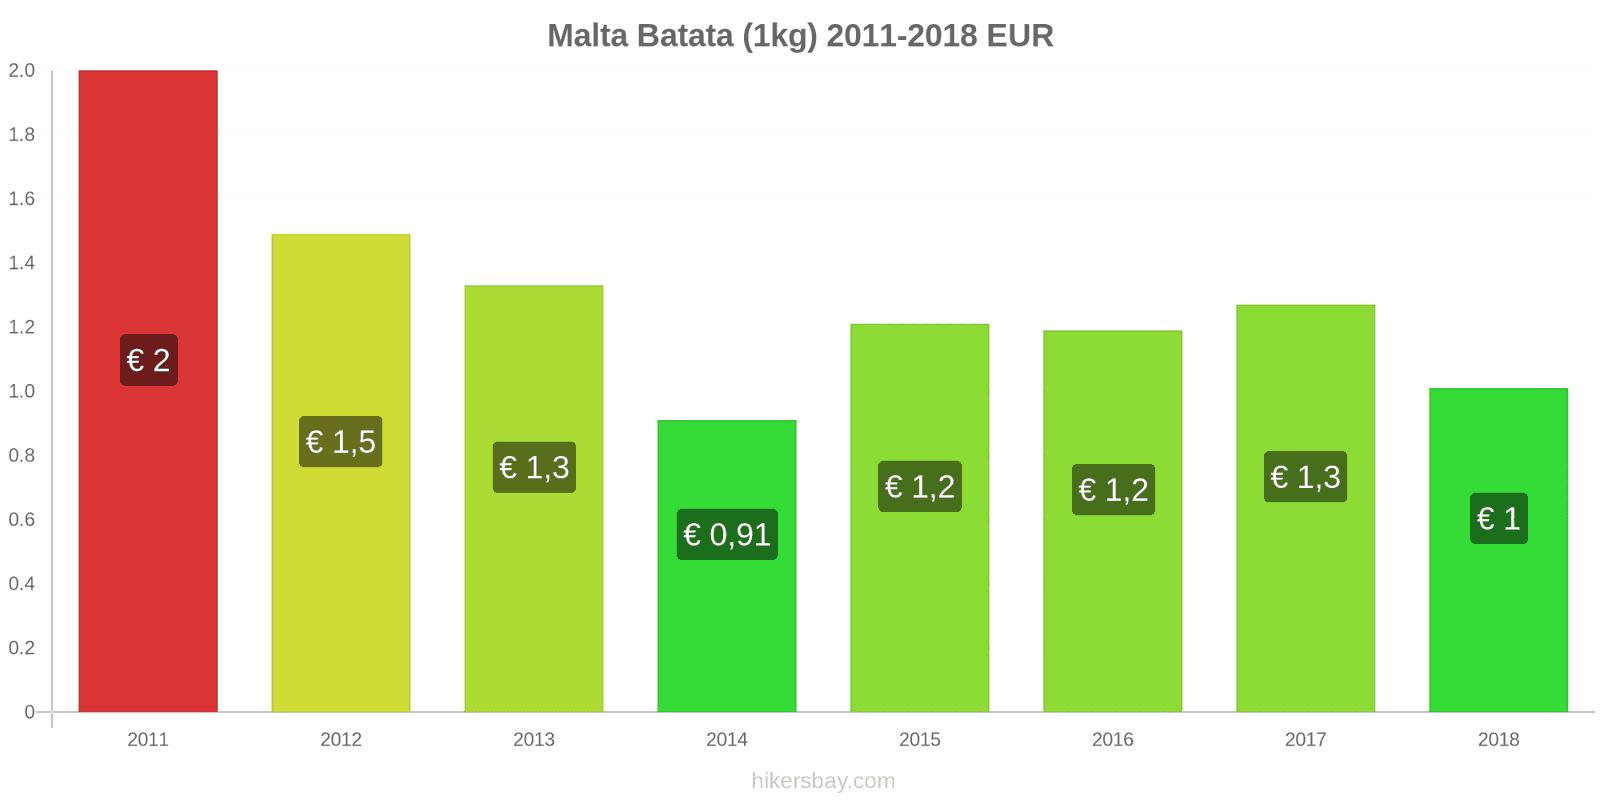 Malta mudanças de preços Batatas (1kg) hikersbay.com